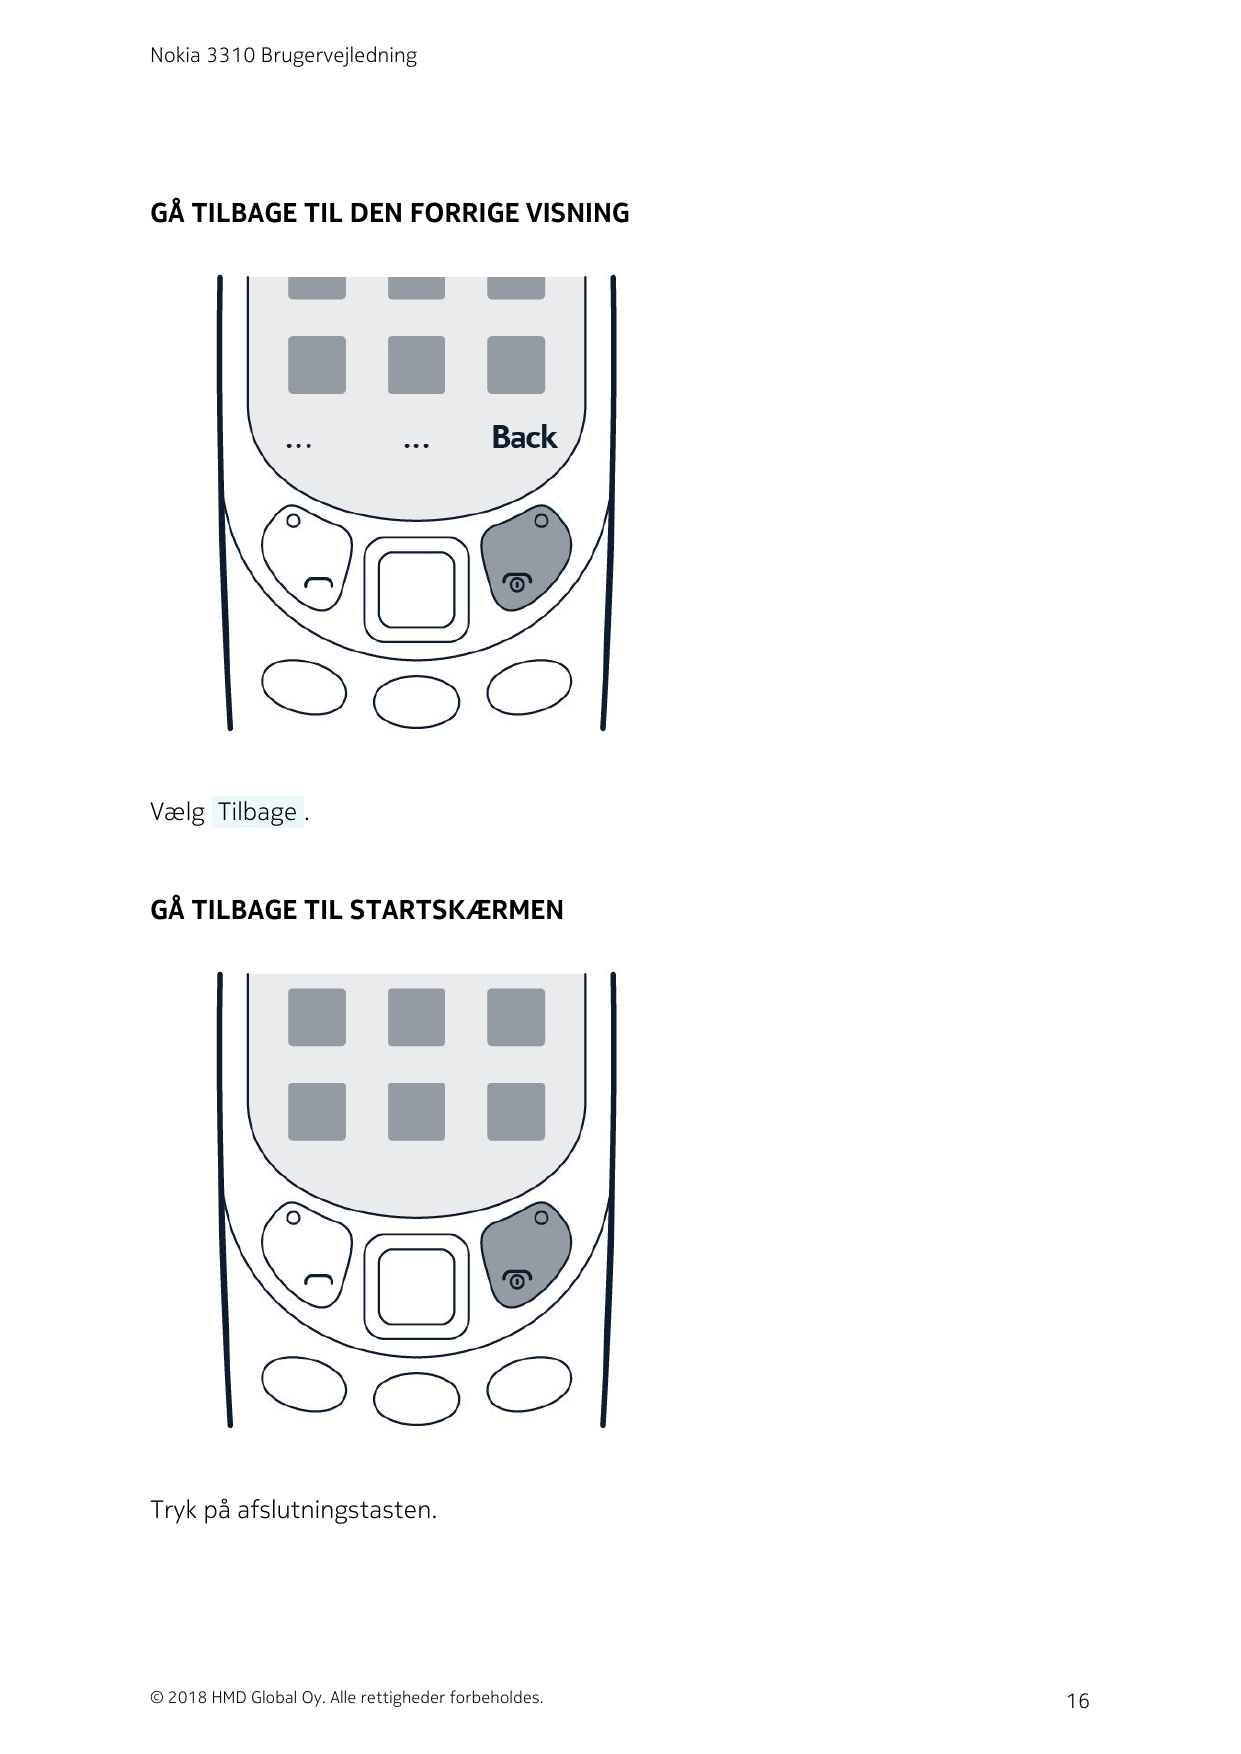 Nokia 3310 BrugervejledningGÅ TILBAGE TIL DEN FORRIGE VISNINGVælg  Tilbage .GÅ TILBAGE TIL STARTSKÆRMENTryk på afslutningstasten